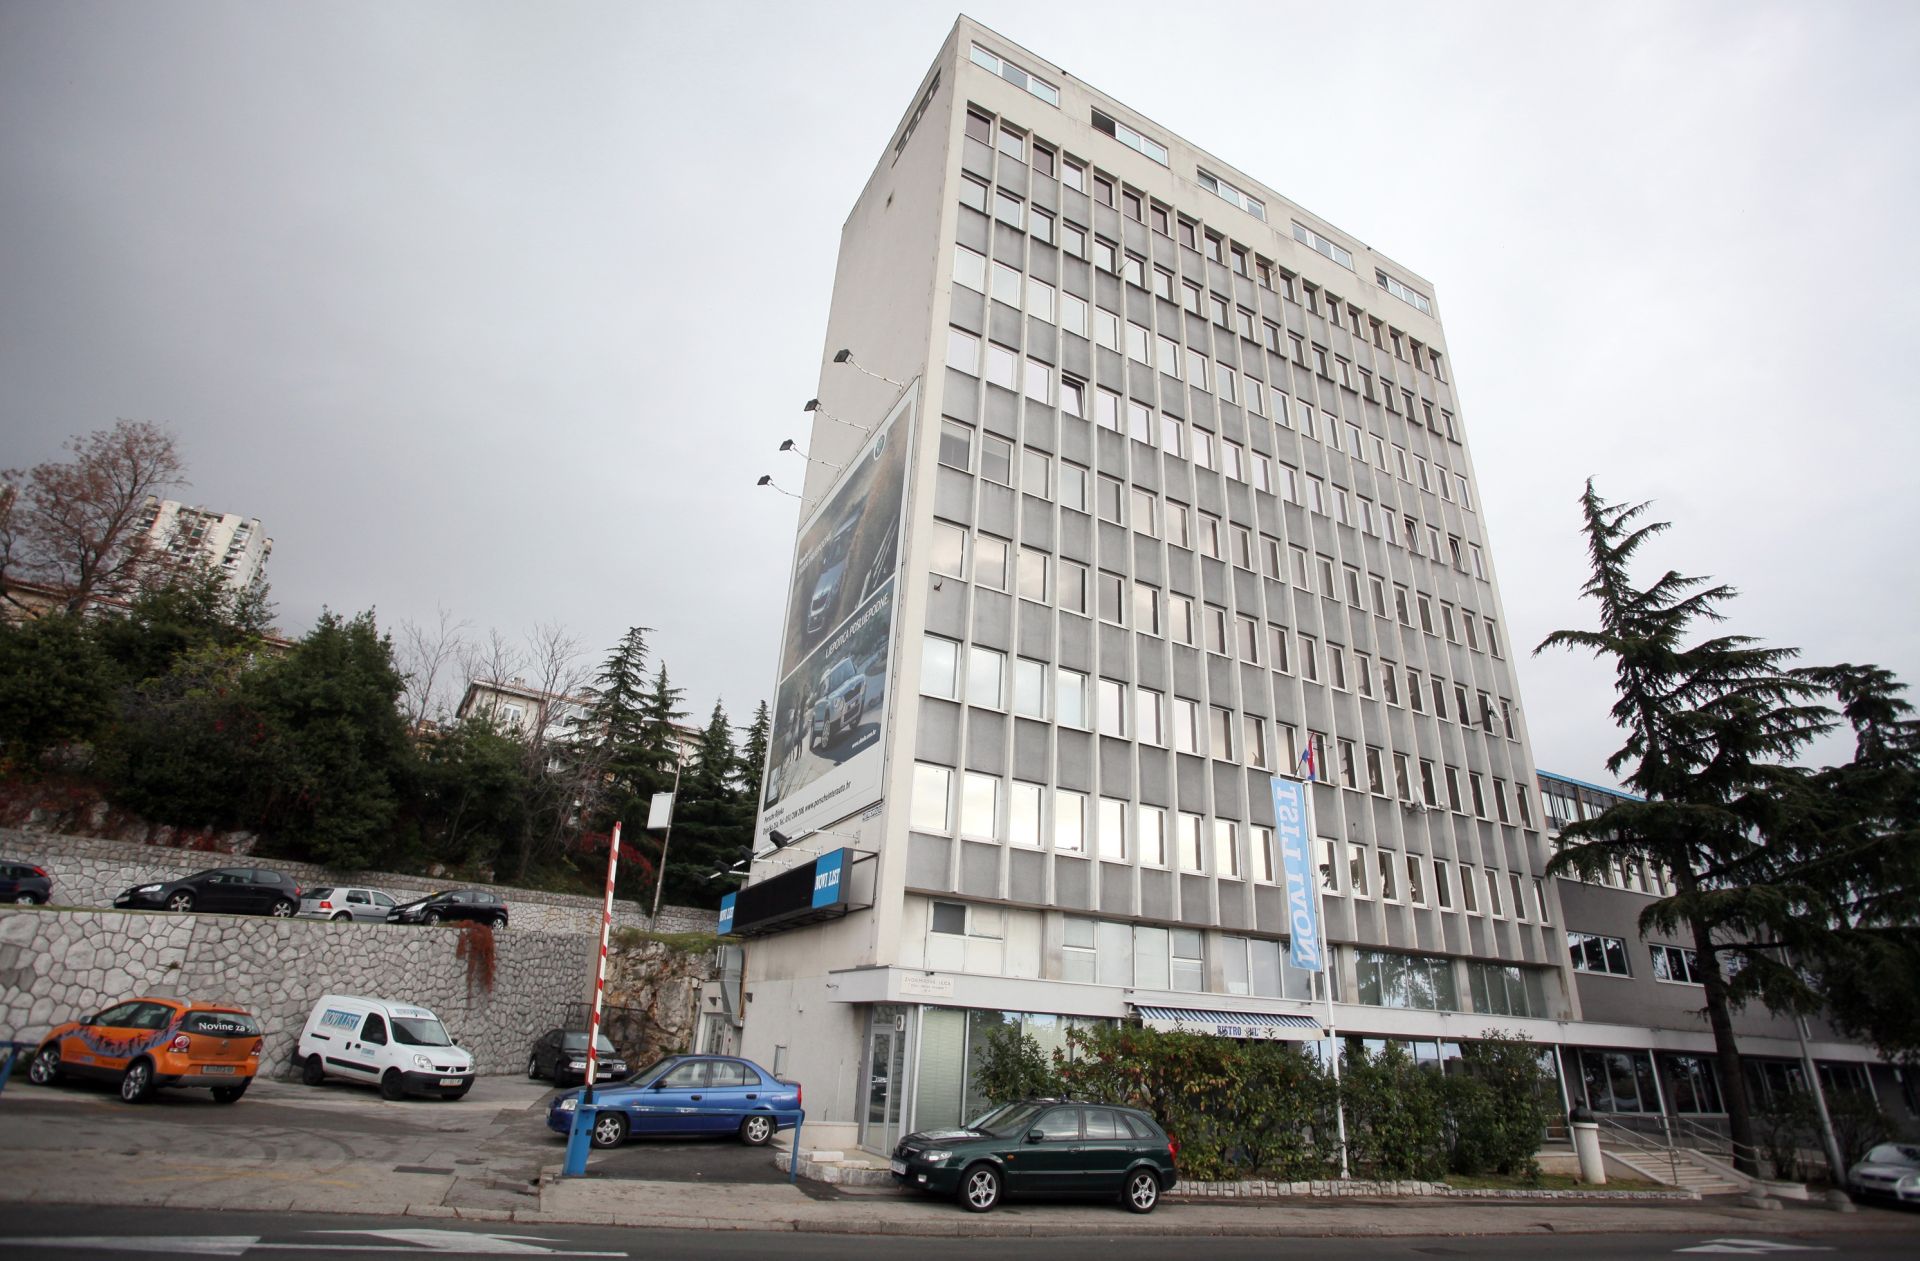 03.12.2011. Rijeka - Zgrada Novog Lista u ulici Zvonimirova 20.
Photo: Nel Pavletic/PIXSELL